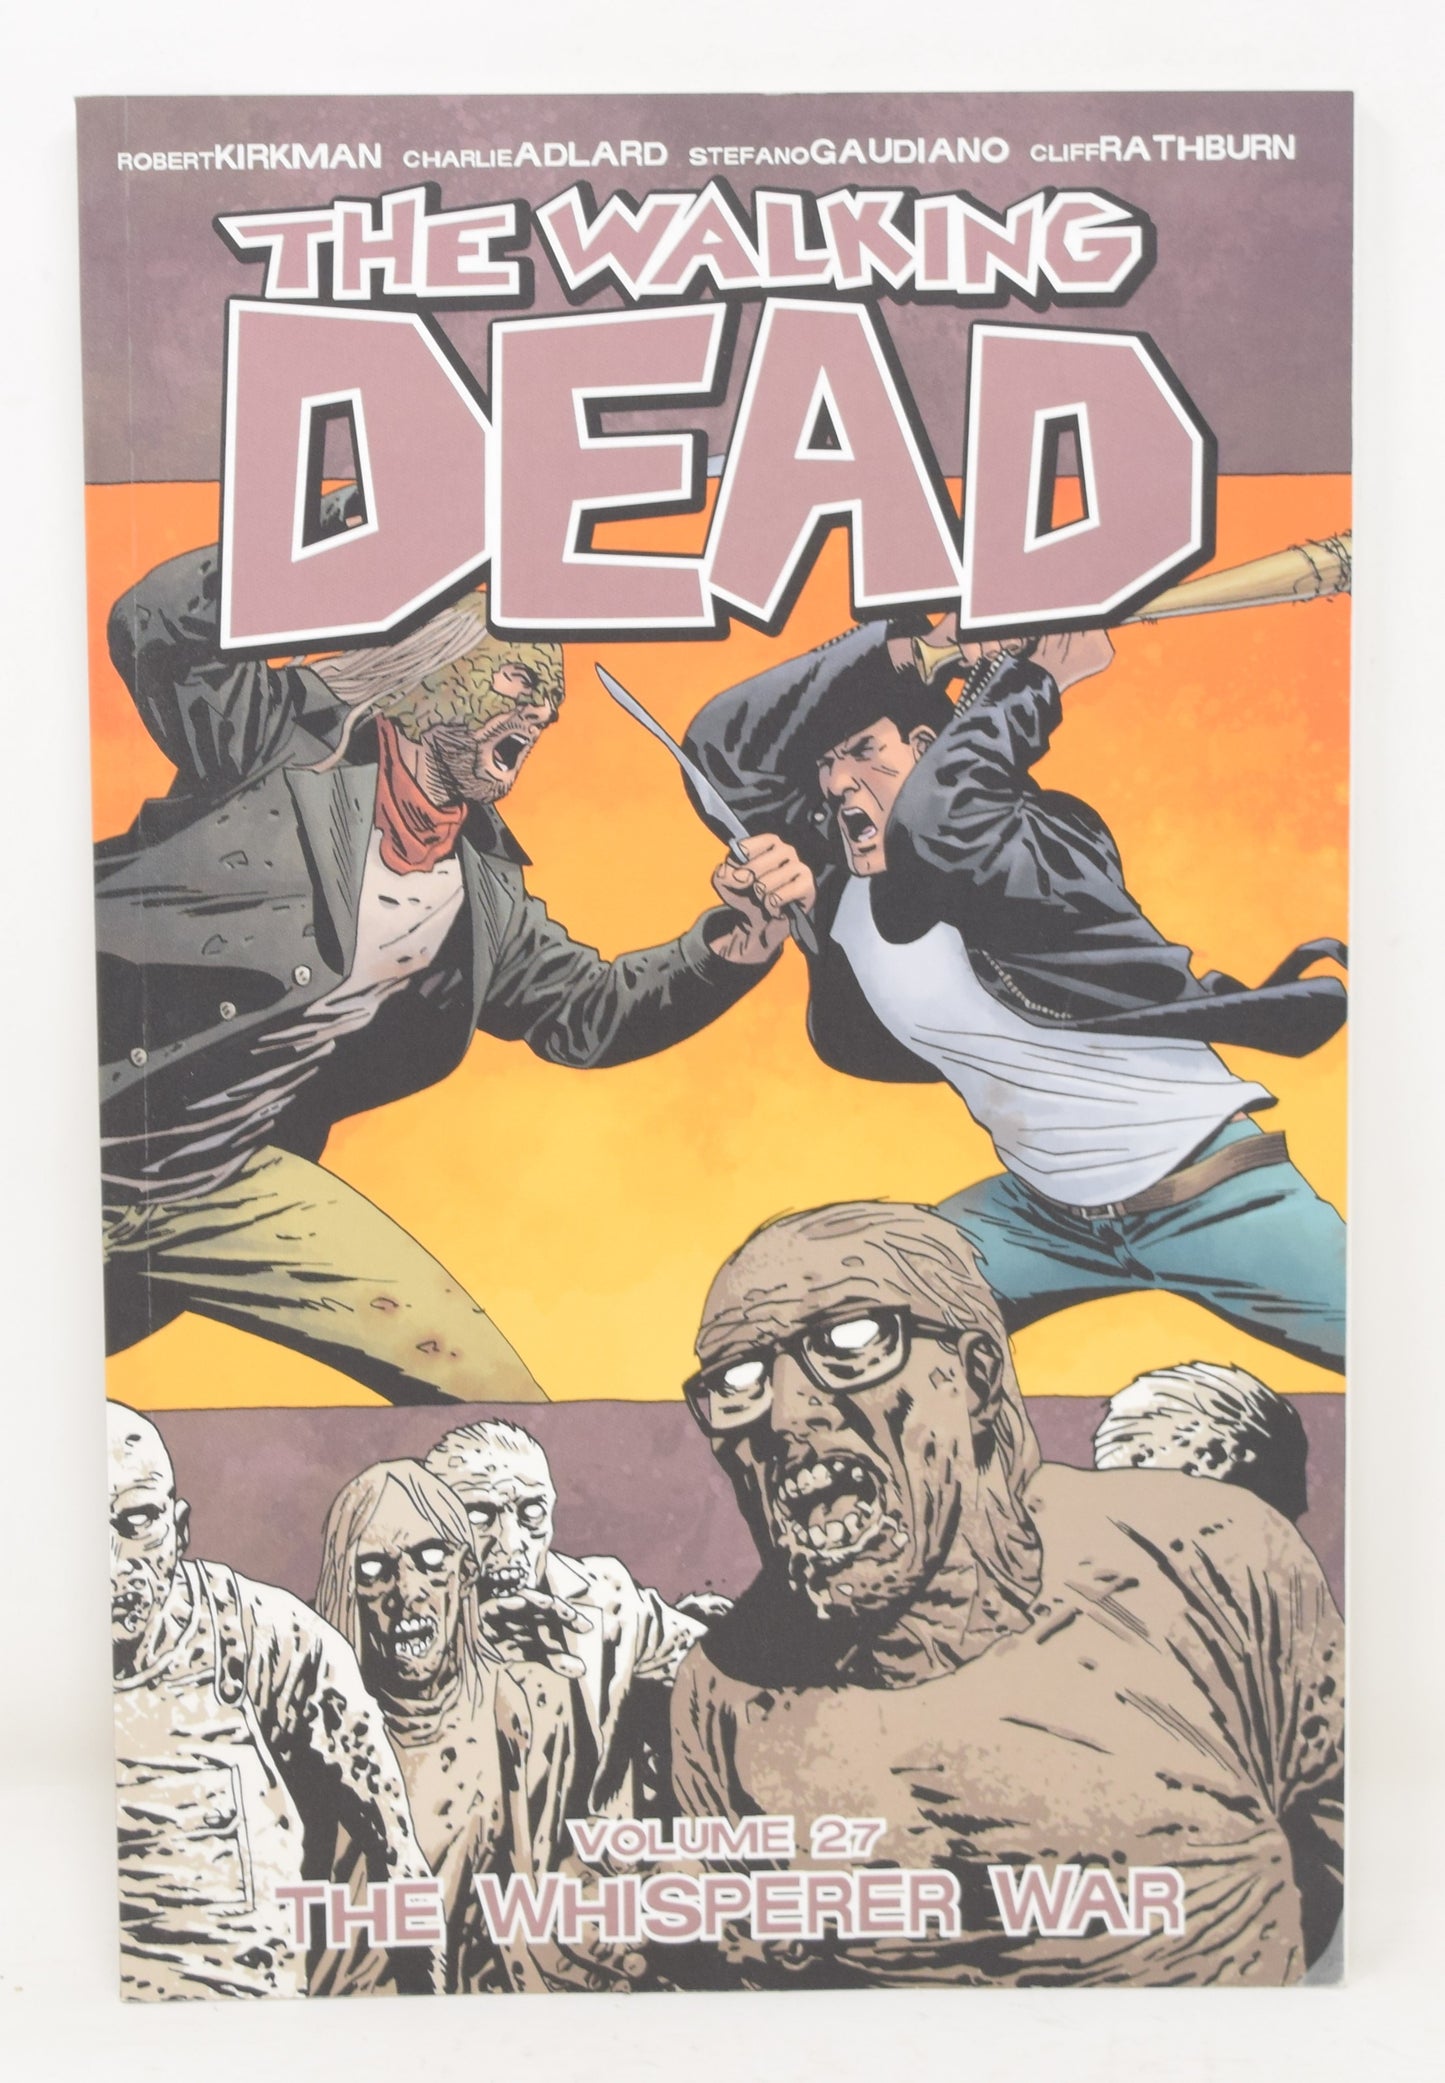 The Walking Dead Vol 27 The Whisper War 1st Print 2017